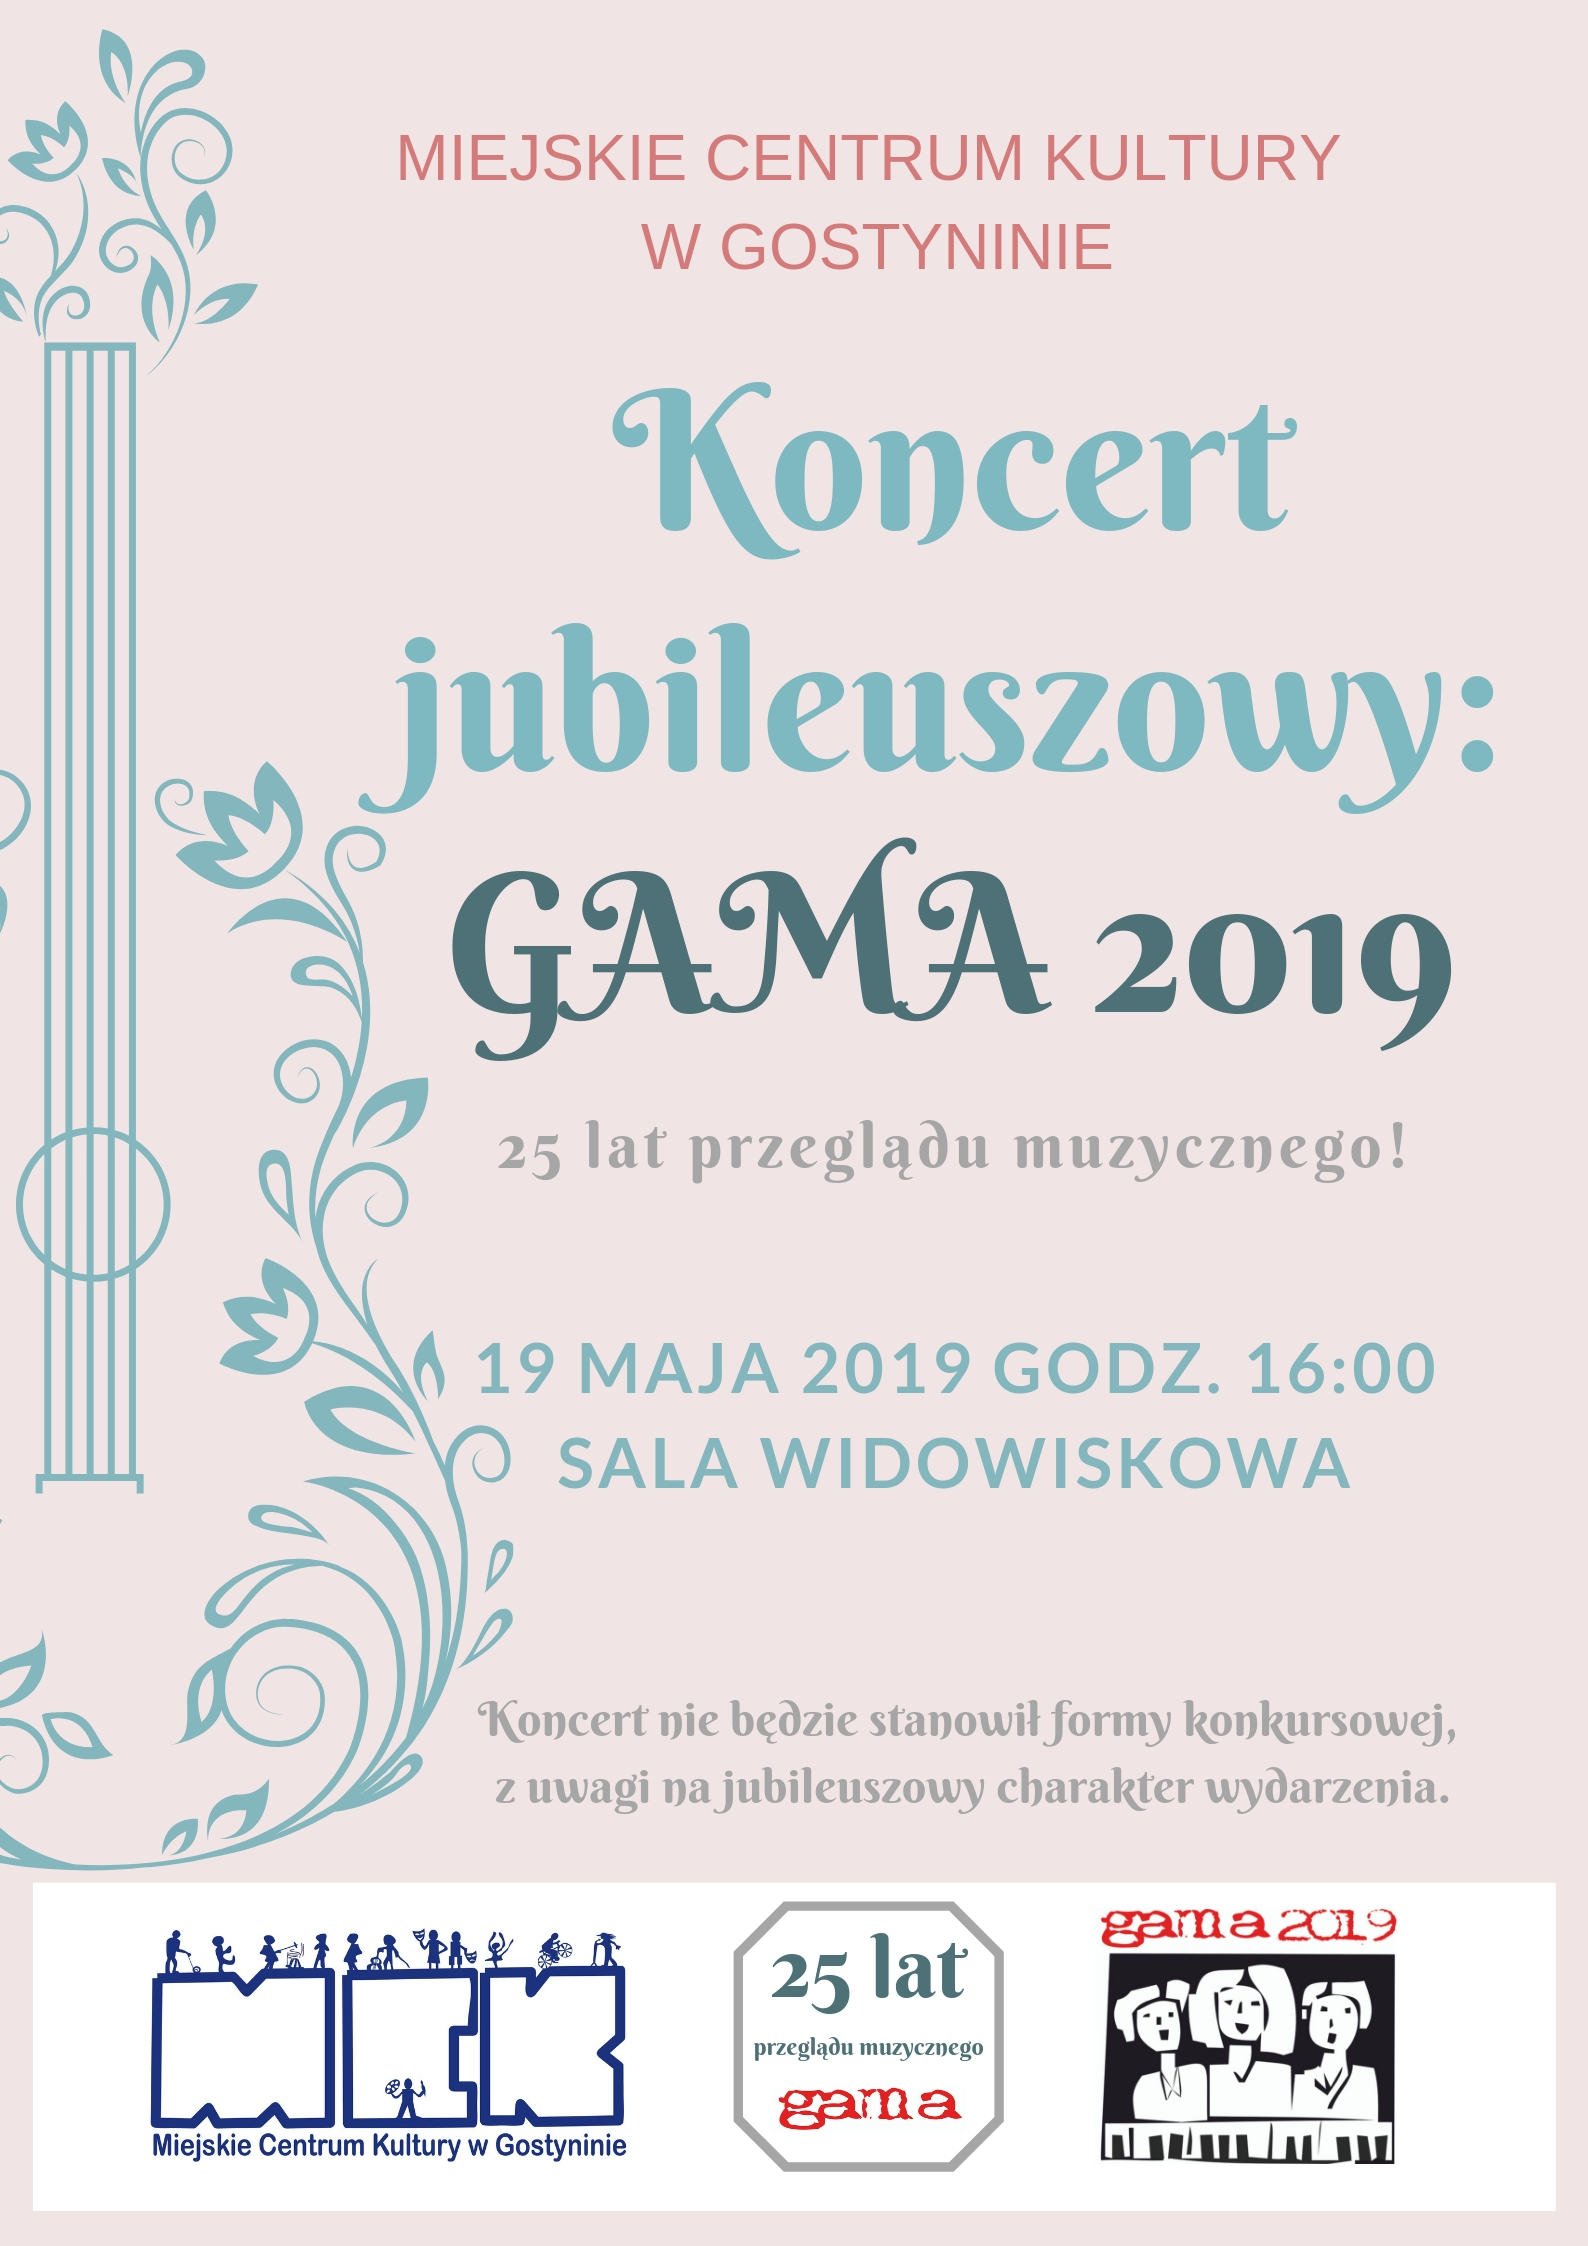 Już w niedzielę 19.05.2019 w MCK odbędzie się koncert jubileuszowy GAMA 2019! WSTĘP WOLNY!